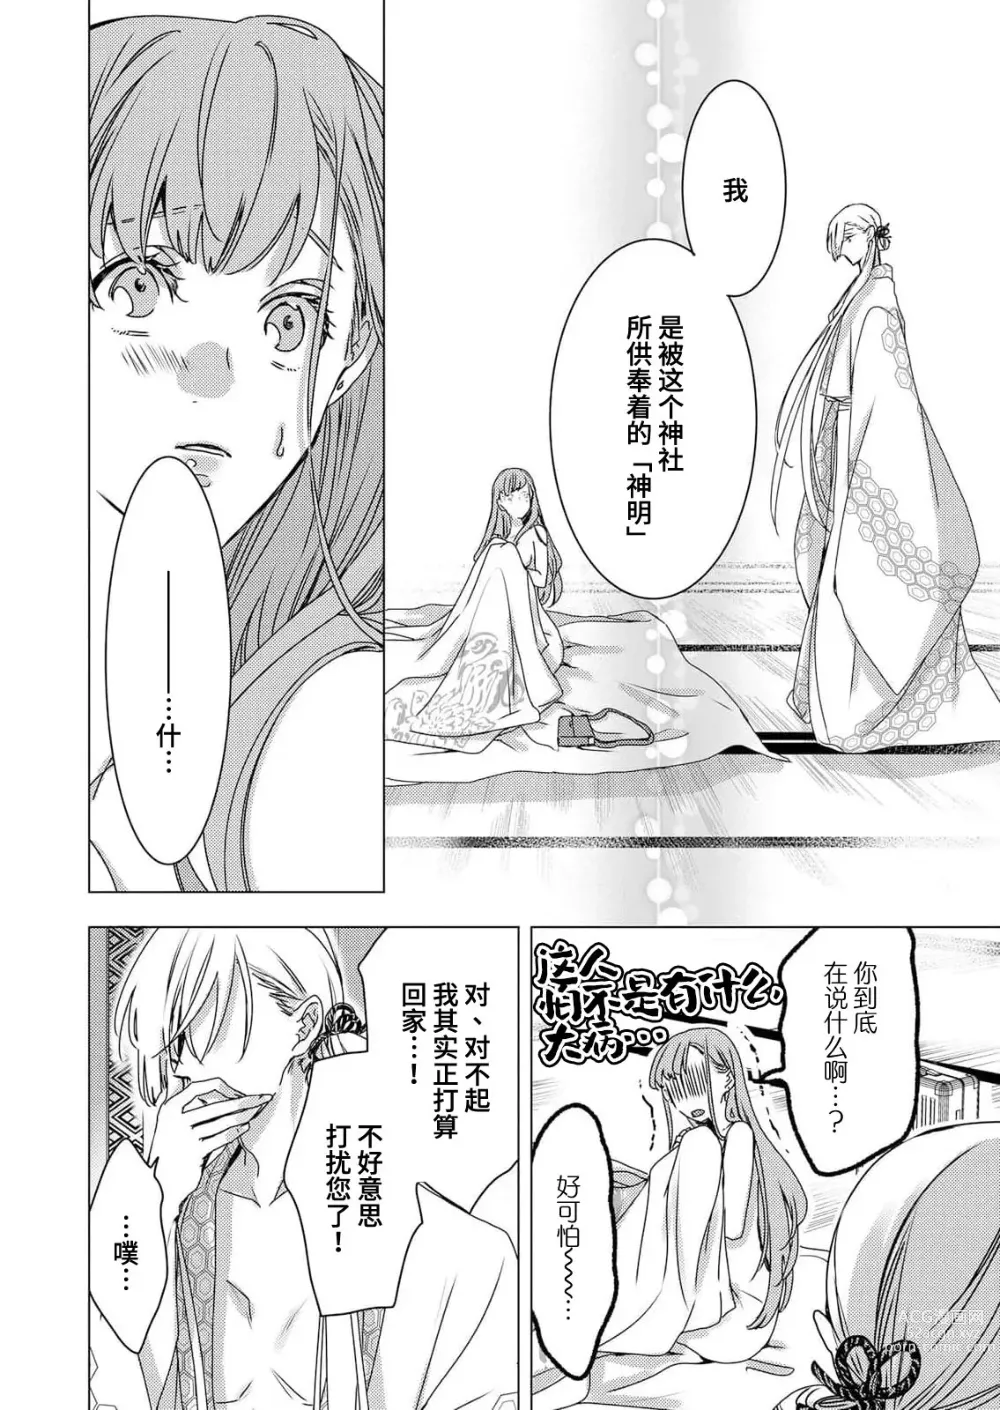 Page 13 of manga 嫉妒心很强的结缘神…。连身心都被执拗地所爱